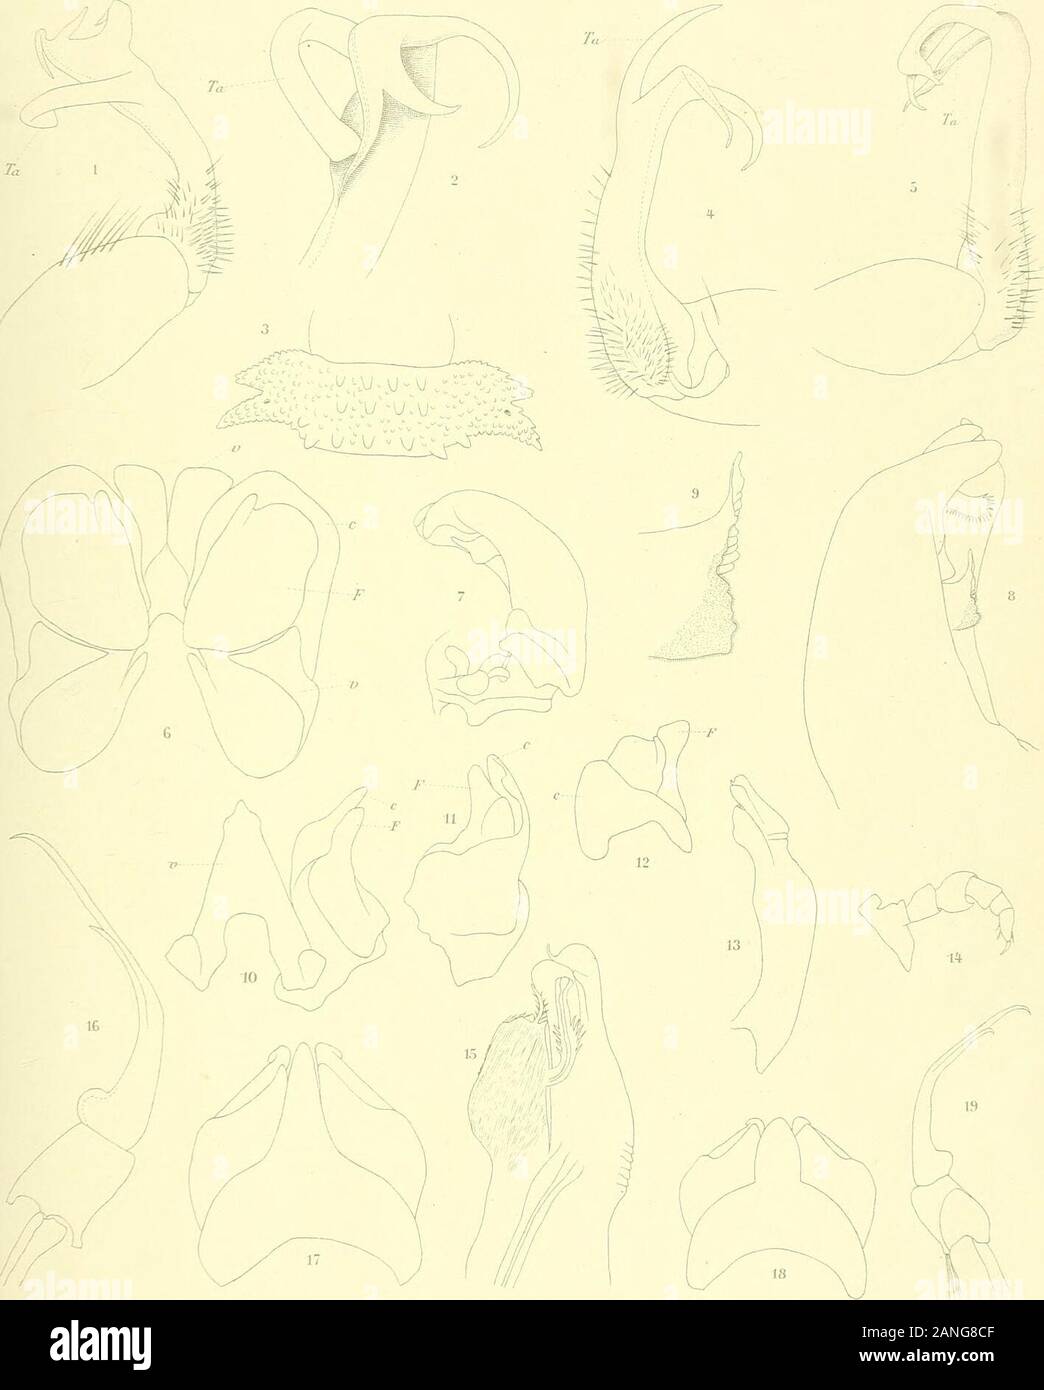 Nova Guinea : résultats de l'expédition scientifique néerlandaise à la Nouvelle-Guinée en 1903[-1920] . fs. — Zool. Anz. XXIX. 38 TAFELERKLÀRUNG. TAFEL I. Fig. r, 2. Platyrhacus declivus n. sp. i. Gonopode, von aussen. 2. Ende des Gonopodentelopodits, starker vergrossert. Fig. 3, 4. Platyrhacus notatus n. sp. 3. 10. Segment des çf, Dorsalseite. 4. Gonopode, von innen. Fig. 5. Platyrhacus rimosus Gonopode. Fig. 6—g. Acanthiulus Blaïnvillei Le Guill. 6. Vordere Gonopoden.•j, Hinterer Gonopode. 8. Ende des hinteren Gonopoden, starker vergrossert. 9. Innenarm des hinteren Gonopoden bei noch starke Stock Photo